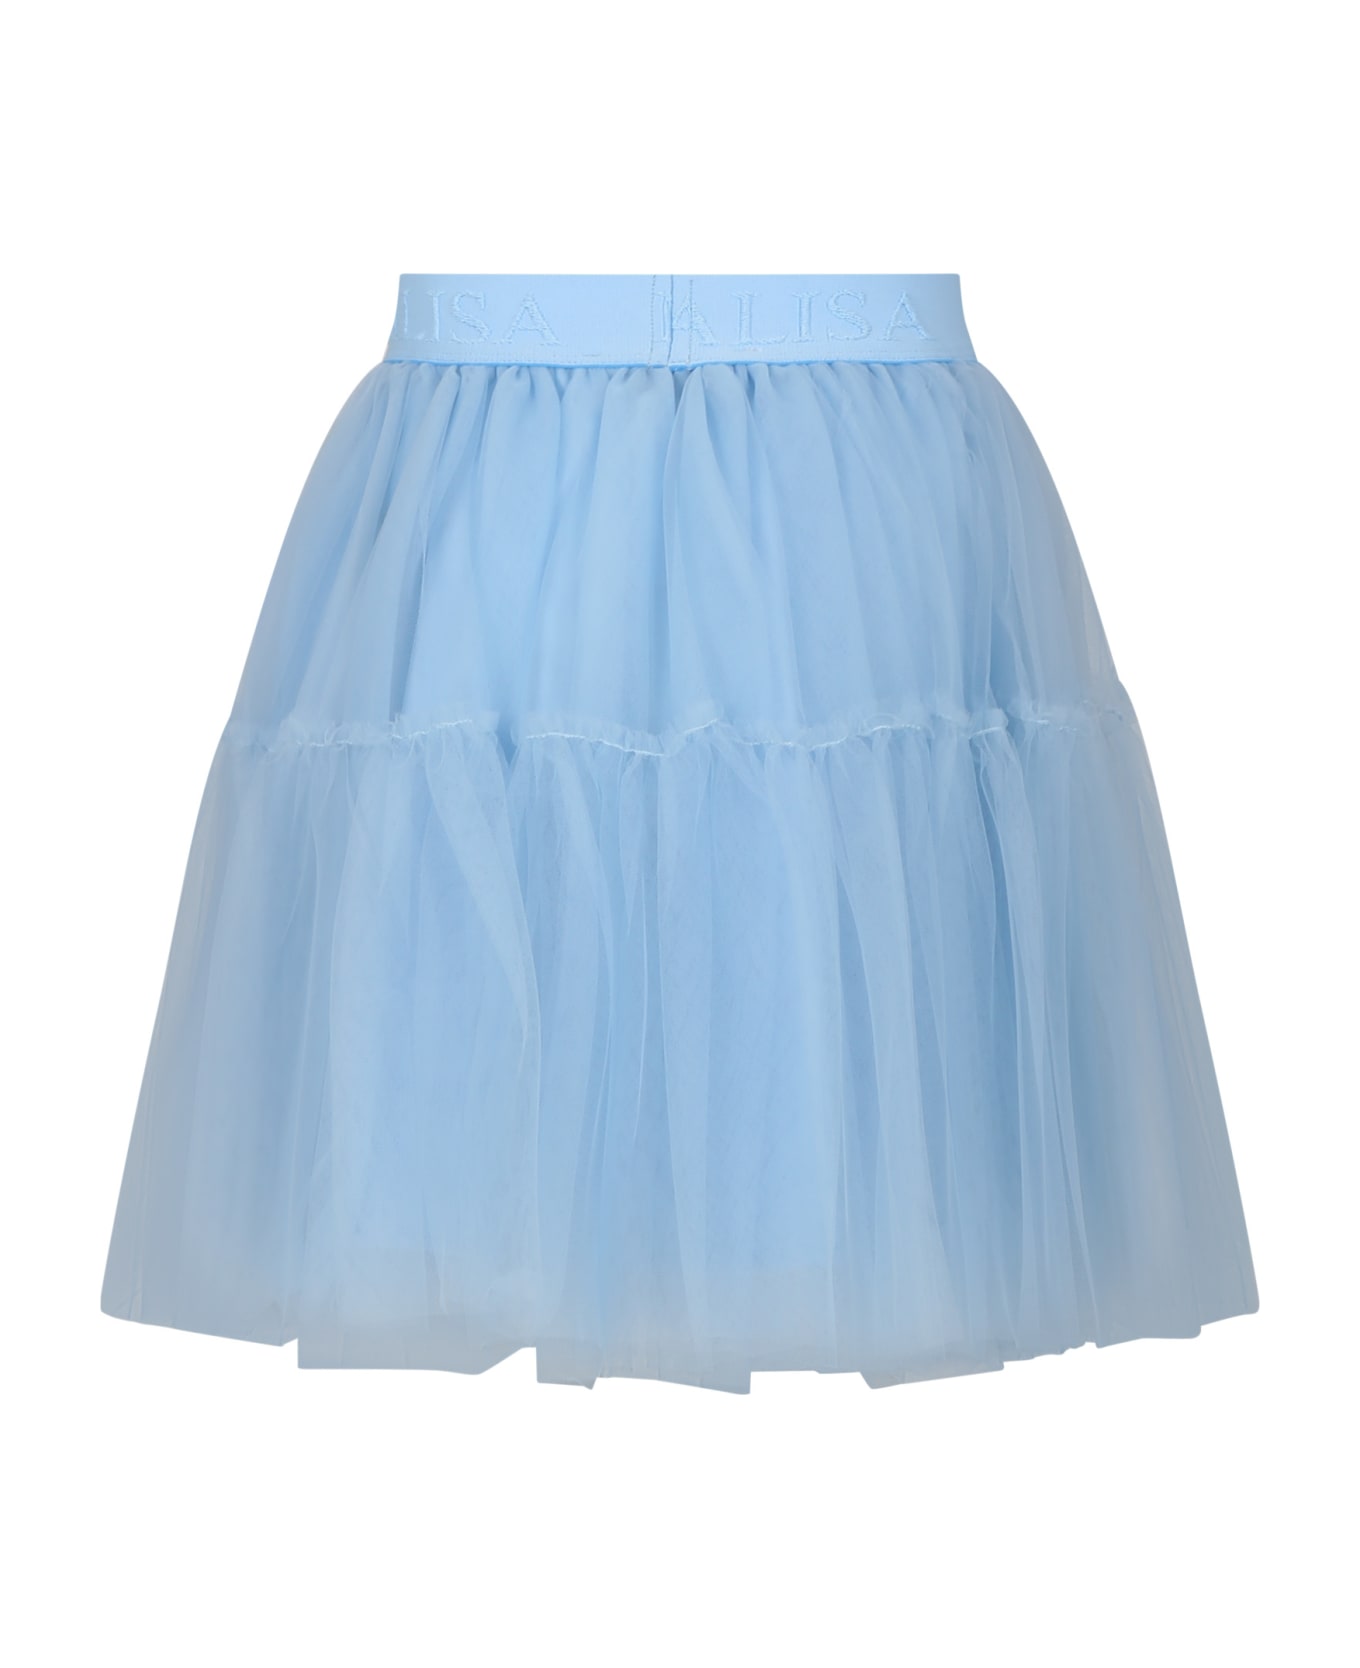 Monnalisa Light Blue Elegant Tulle Skirt For Girl - Light Blue ボトムス